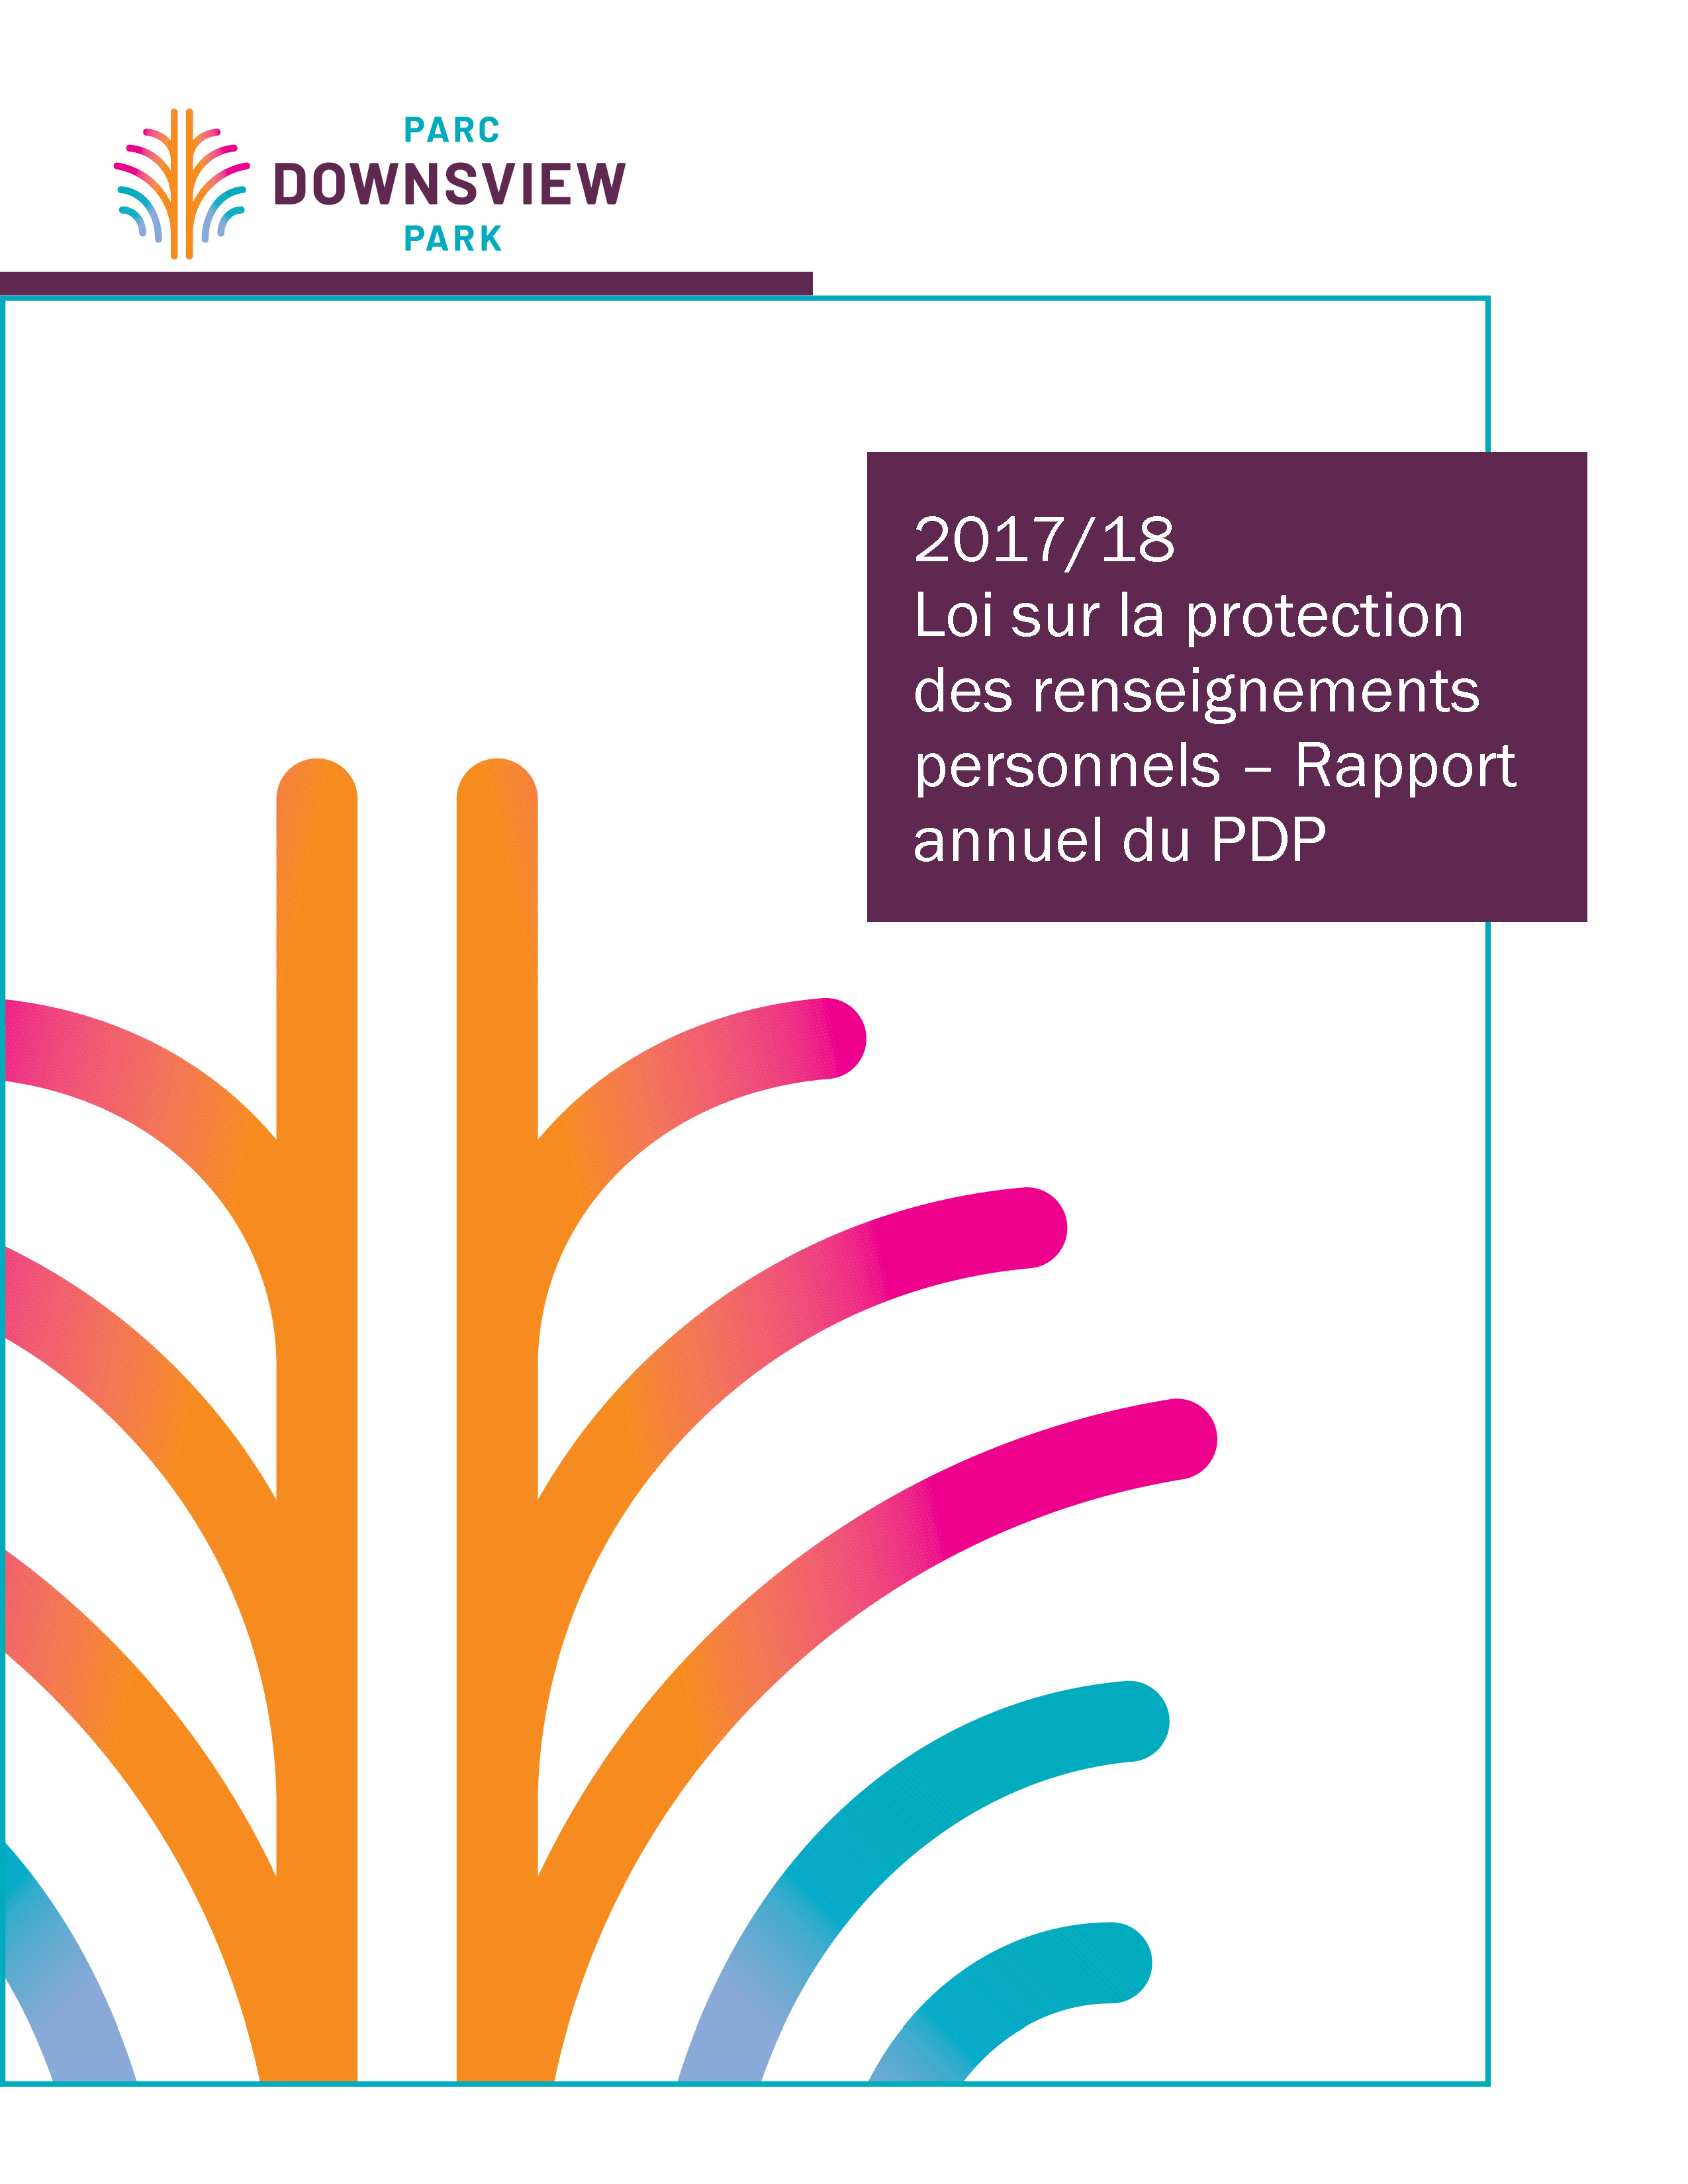 PDP - Loi sur la protection des renseignements personnels 2018